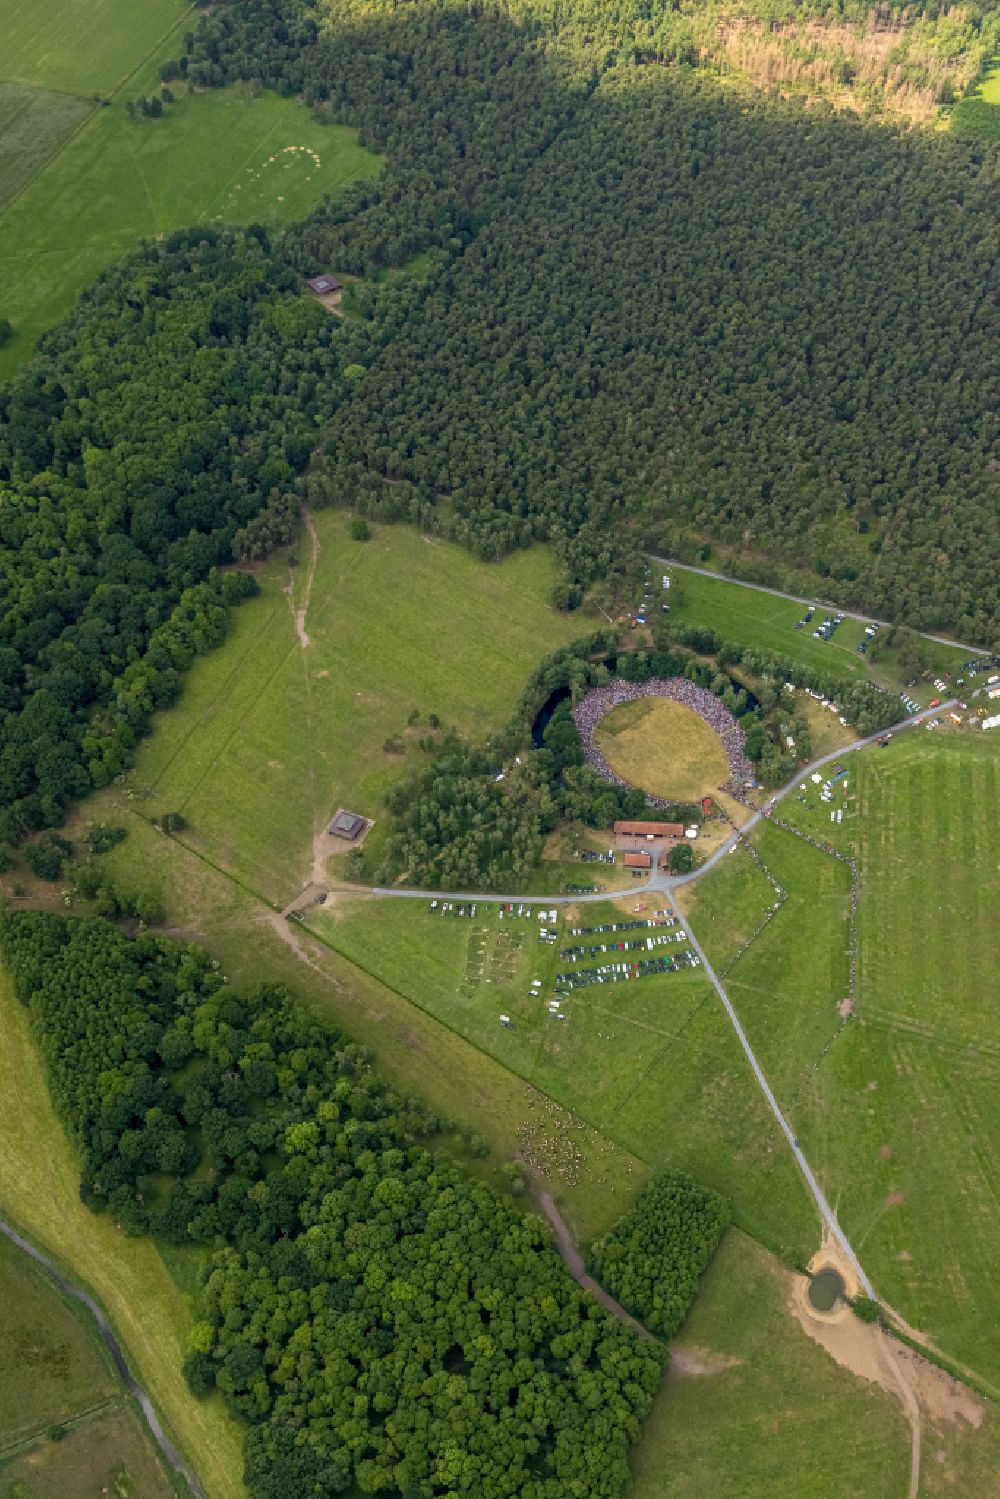 Merfeld von oben - Sportstätten-Gelände der Arena Wildpferdearena in Merfeld im Bundesland Nordrhein-Westfalen, Deutschland